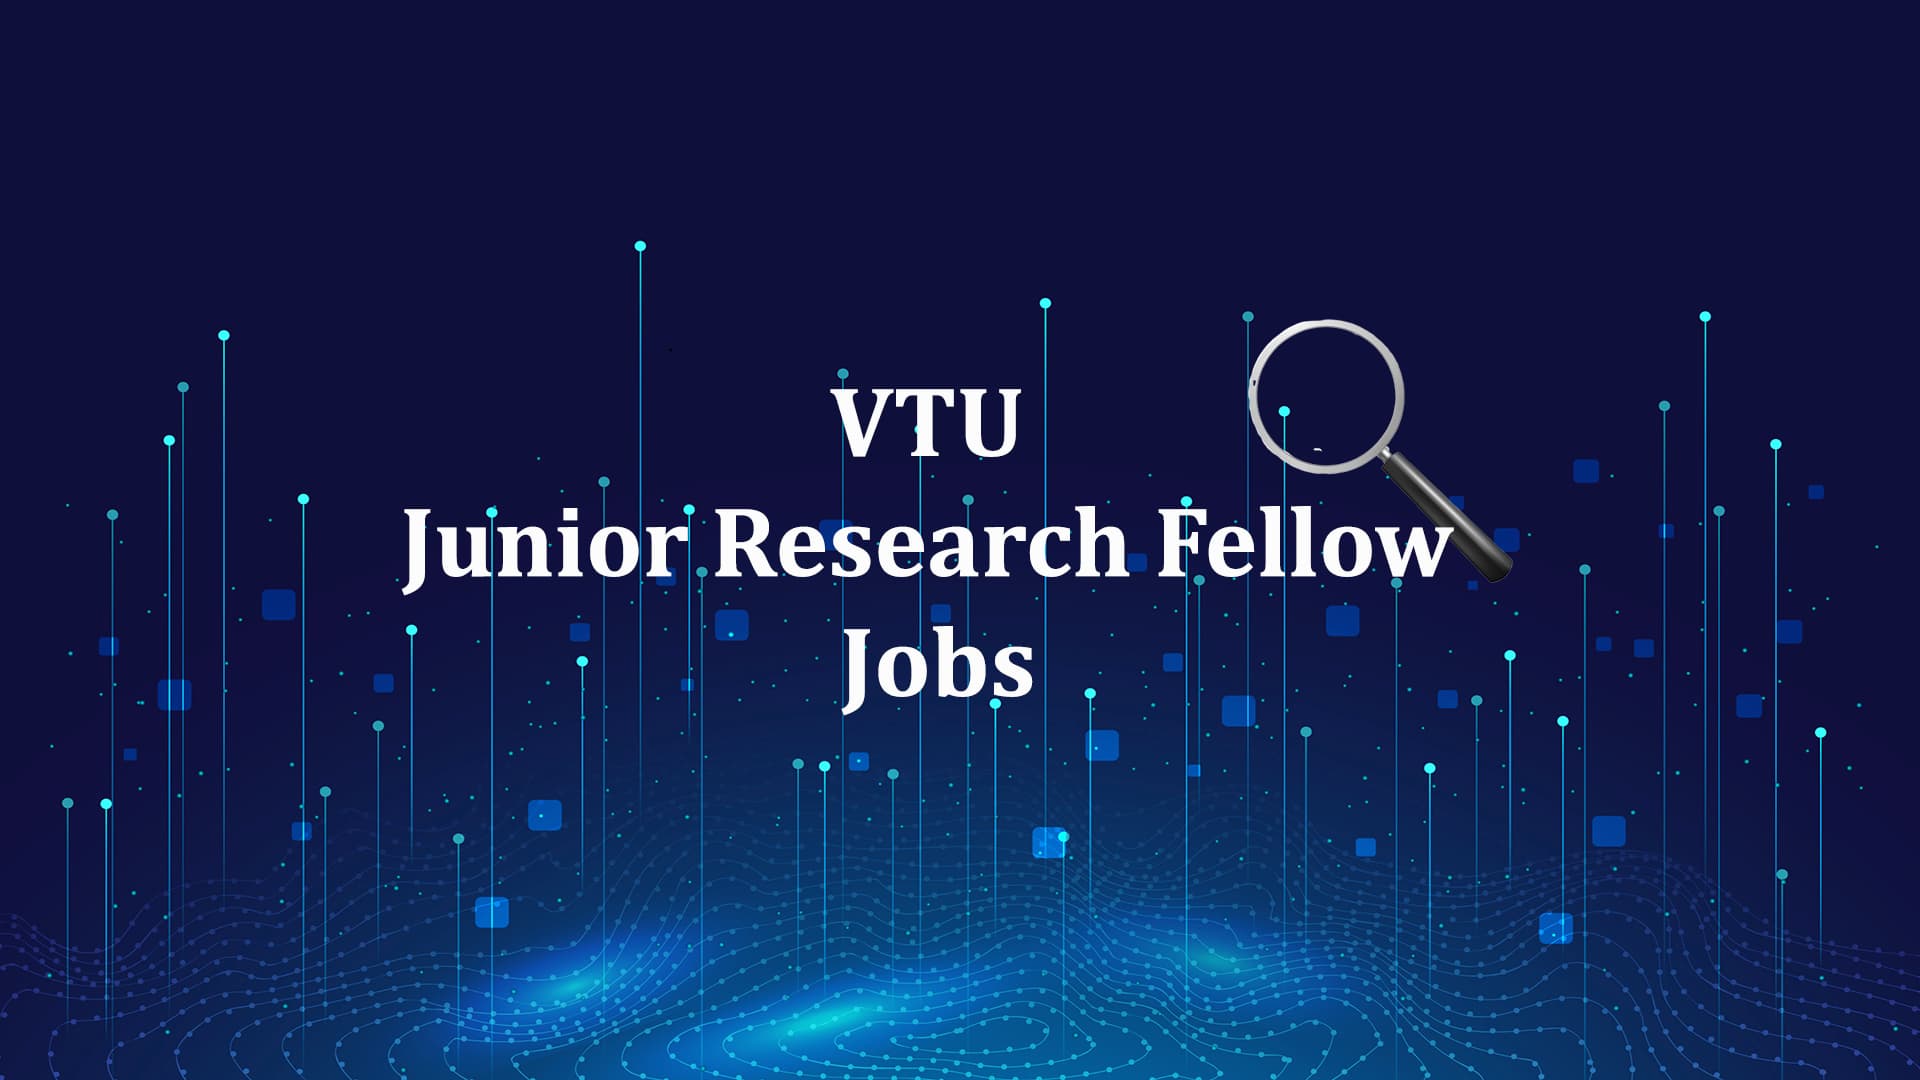 VTU Junior Research Fellow Jobs